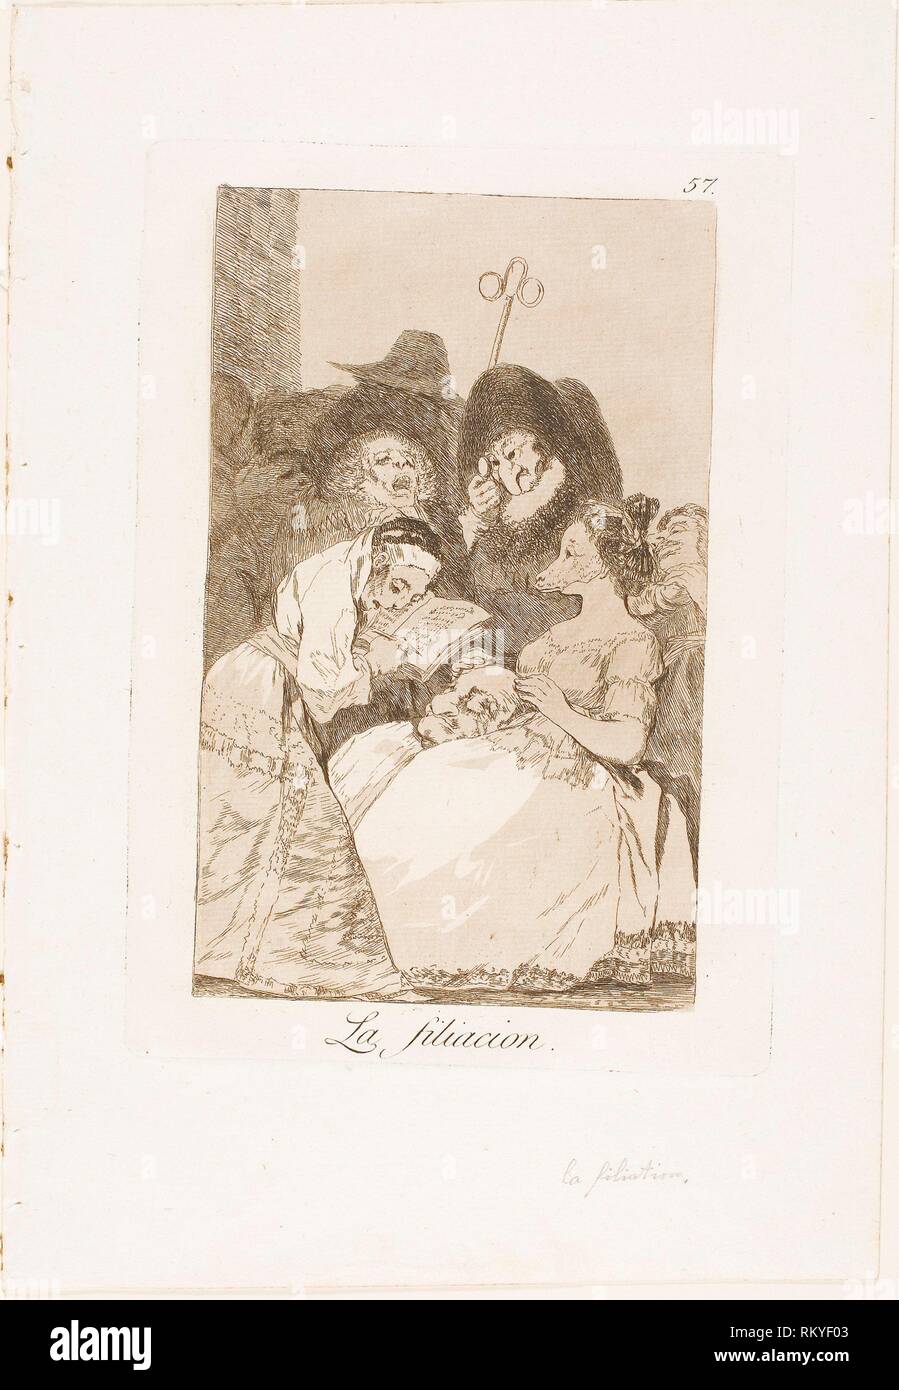 The Filiation, plate 57 from Los Caprichos - 1797/99 - Francisco José de Goya y Lucientes Spanish, 1746-1828 - Artist: Francisco José de Goya y Stock Photo